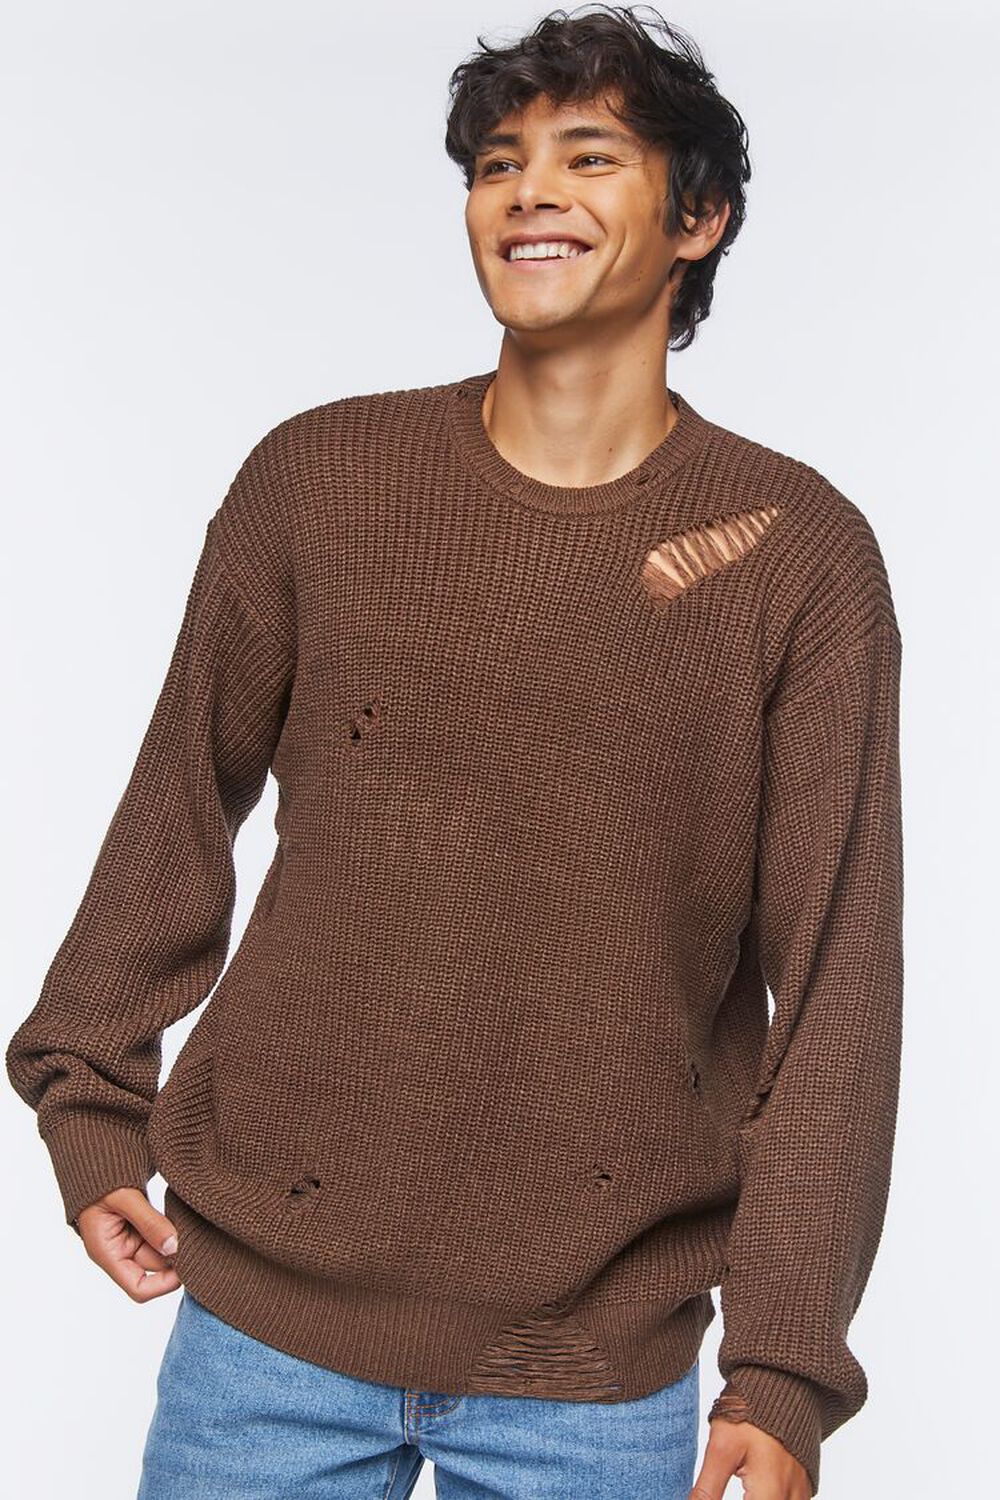 DARK BROWN Distressed Drop-Sleeve Sweater, image 1